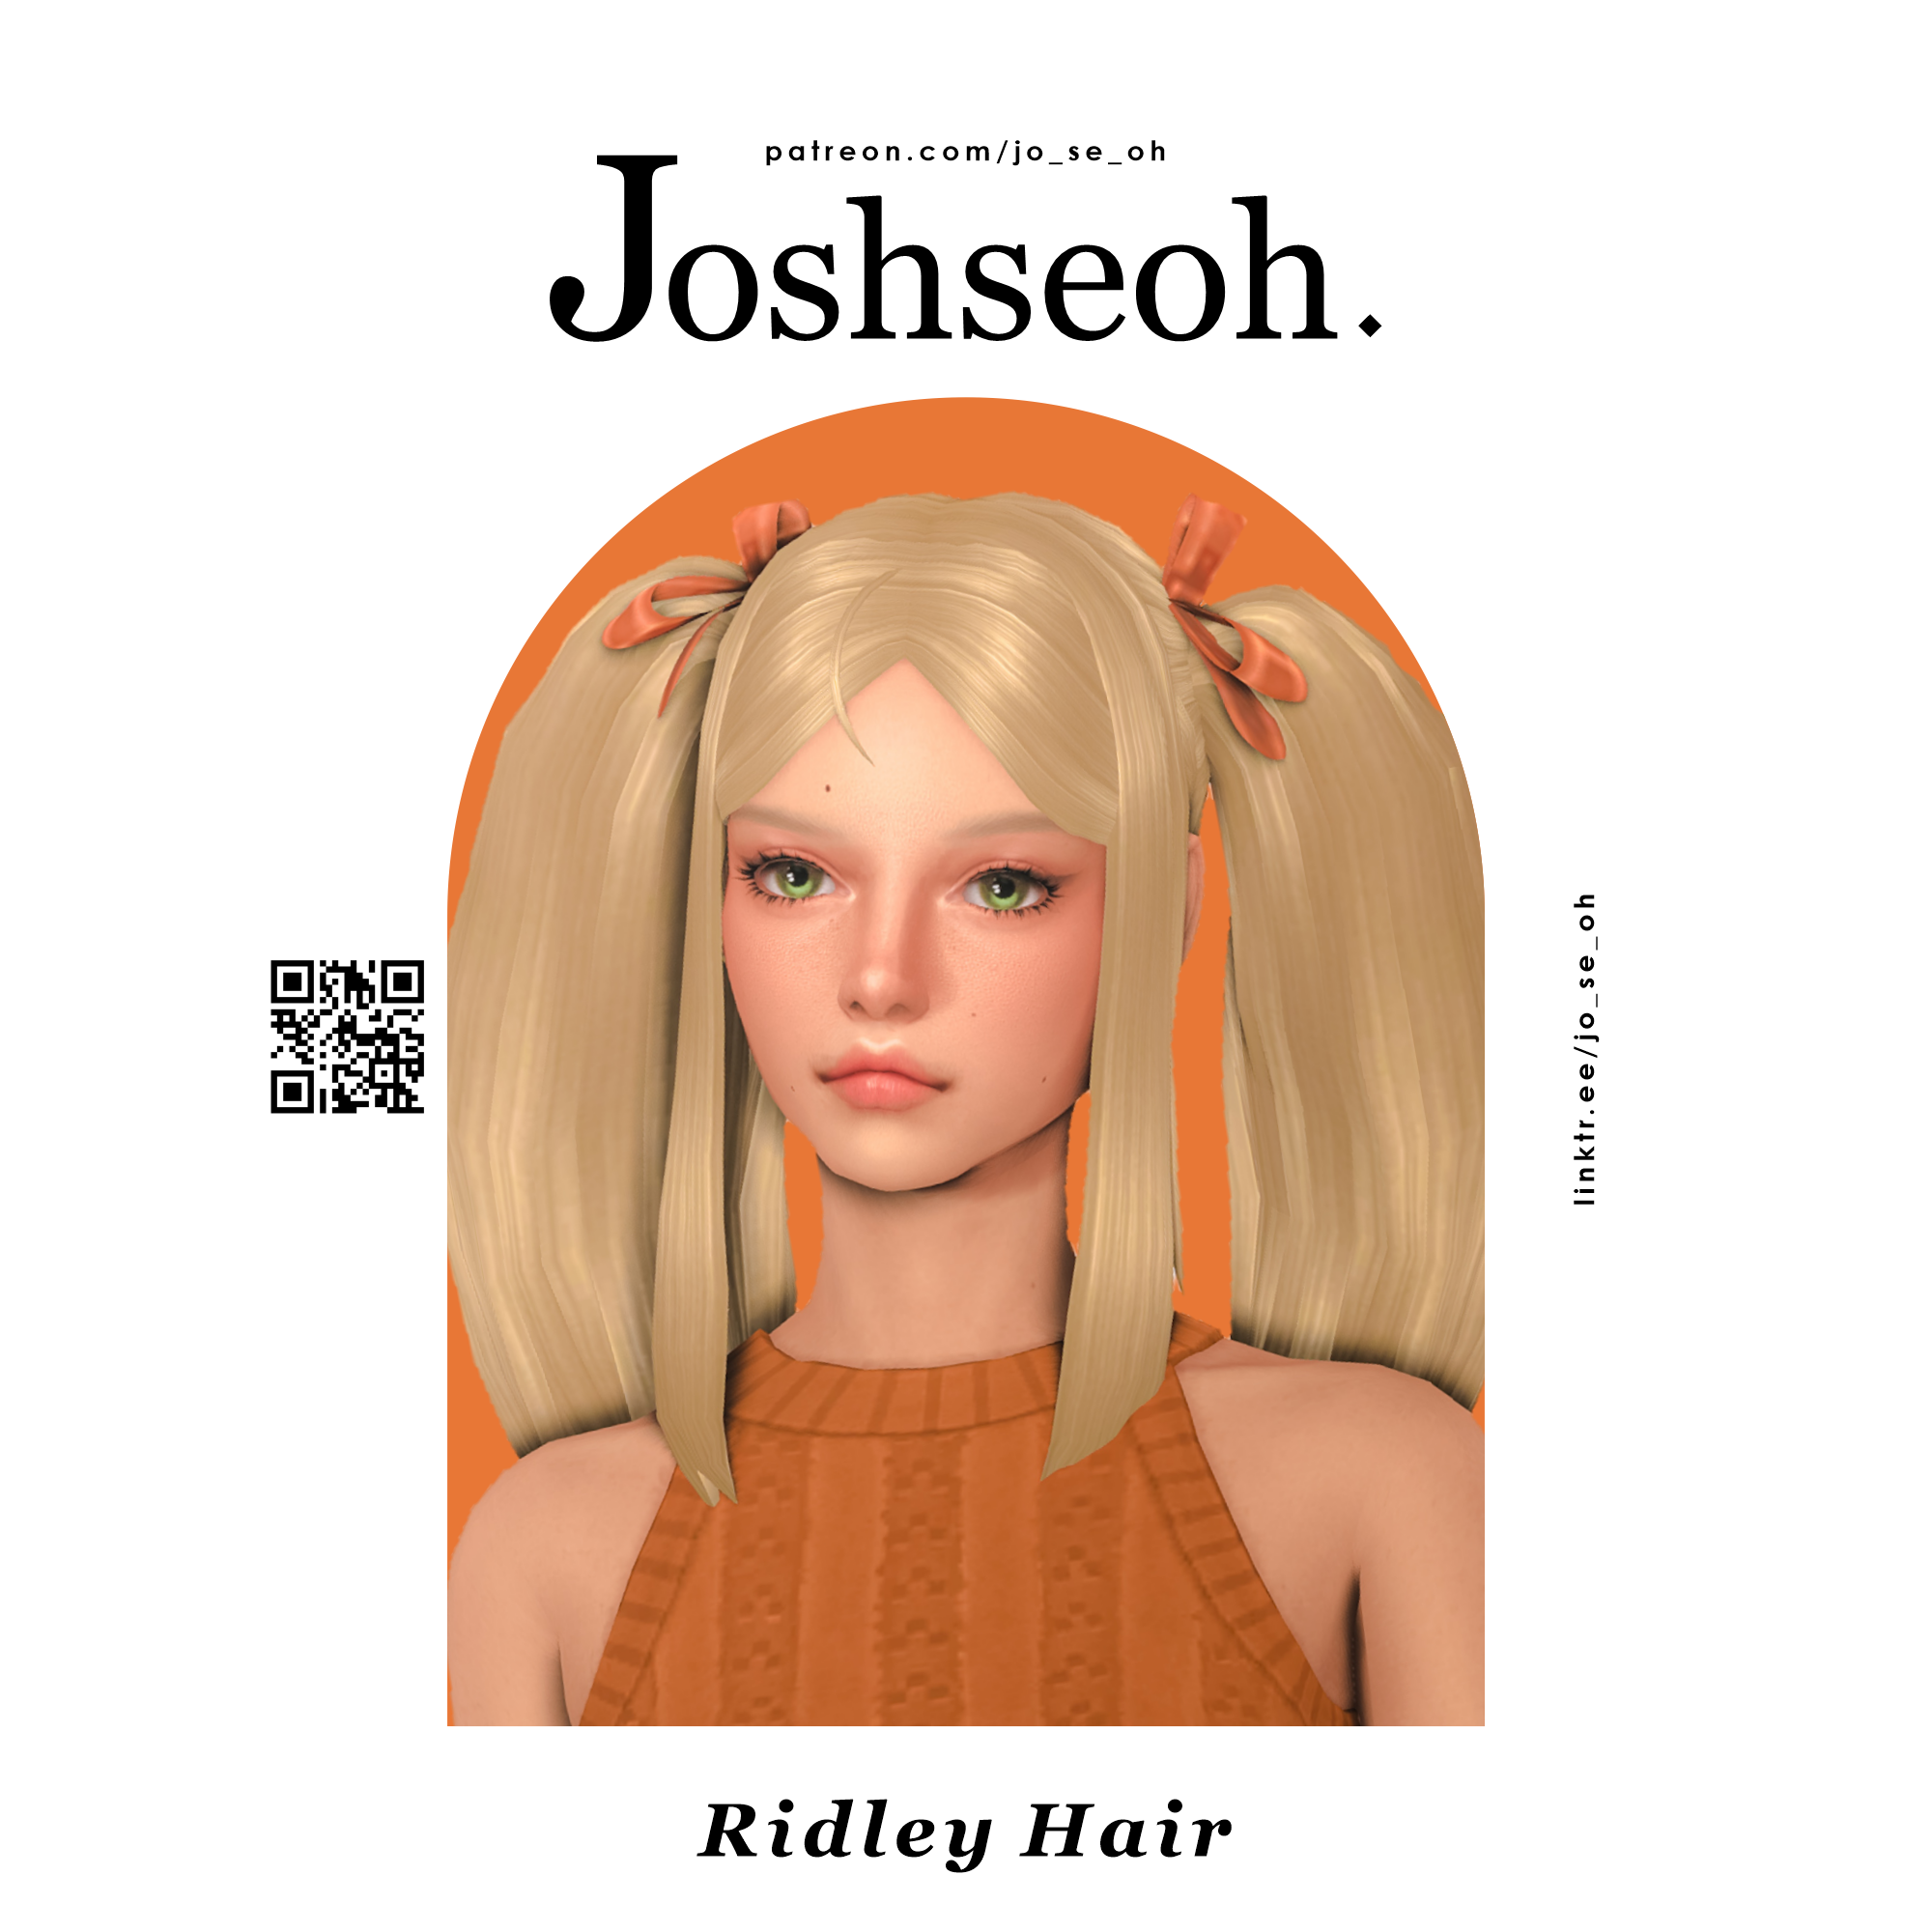 Ridley Hair - The Sims 4 Create a Sim - CurseForge